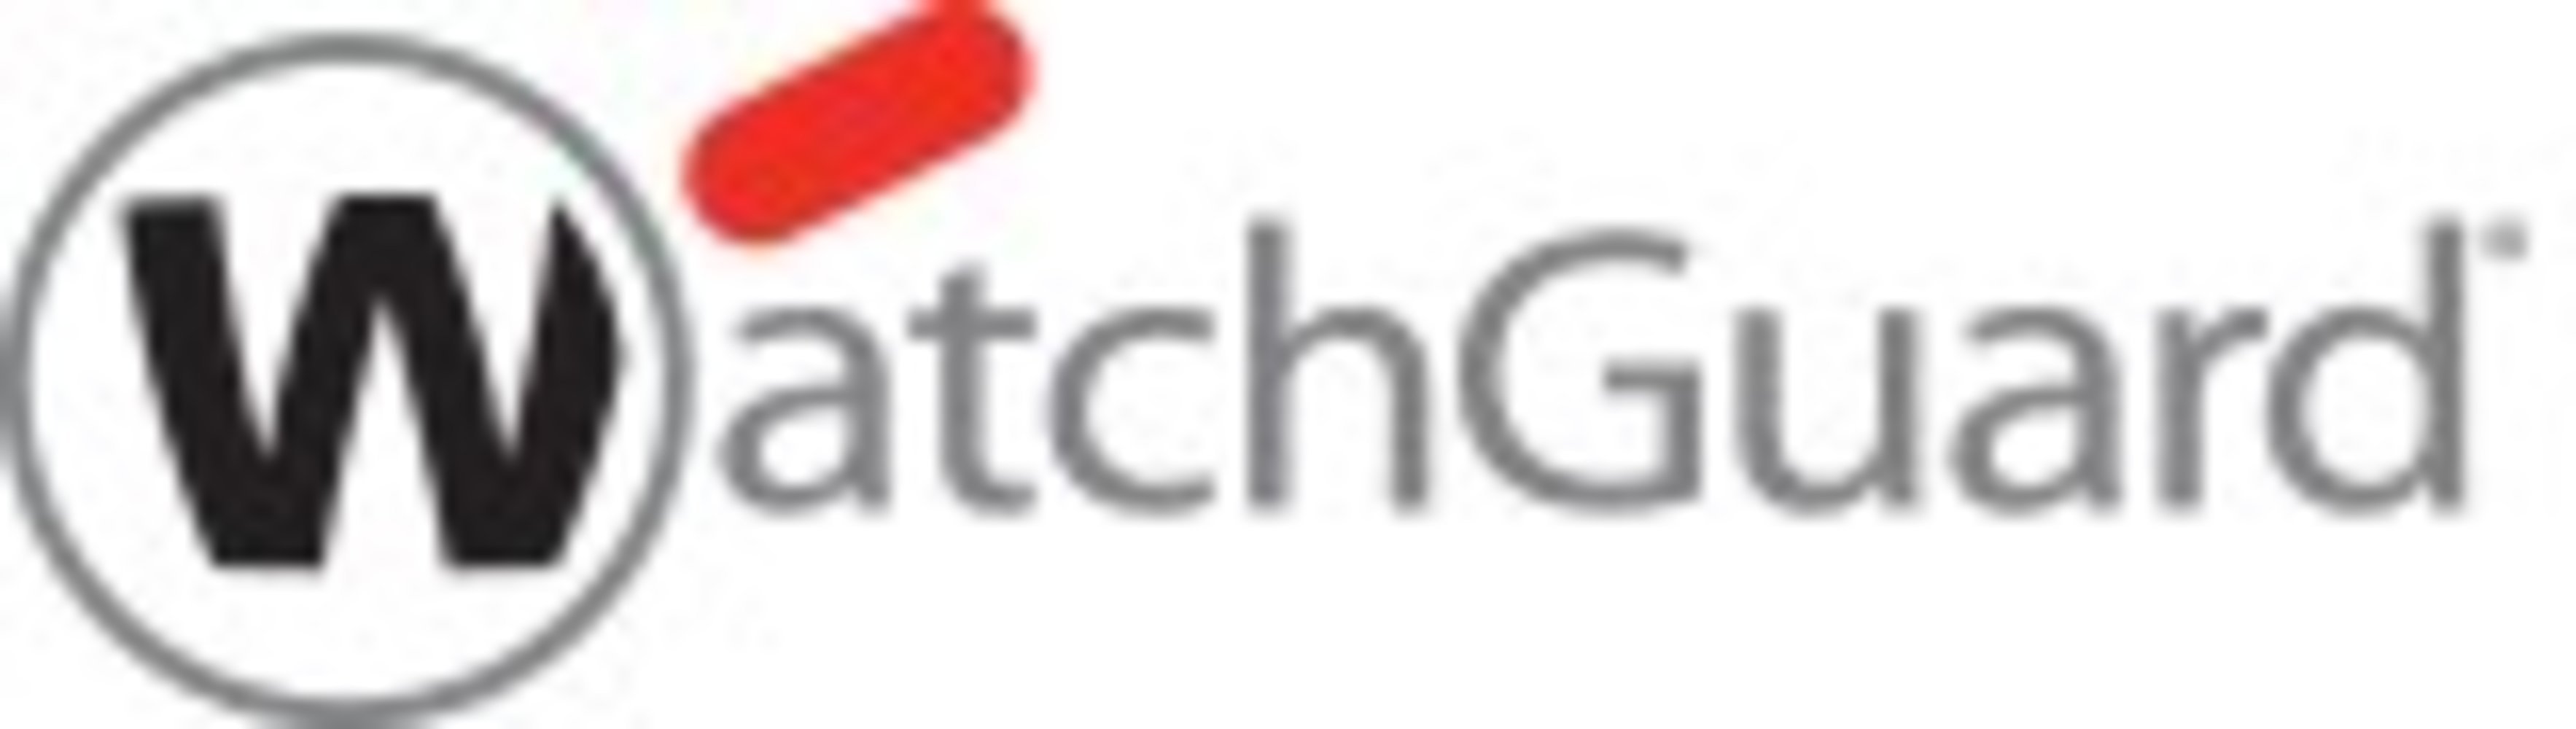 WatchGuard Firebox zbh Cloud-Backup für FireboxV Small - 1 Monat Datenarchivierung für 1 Jahr